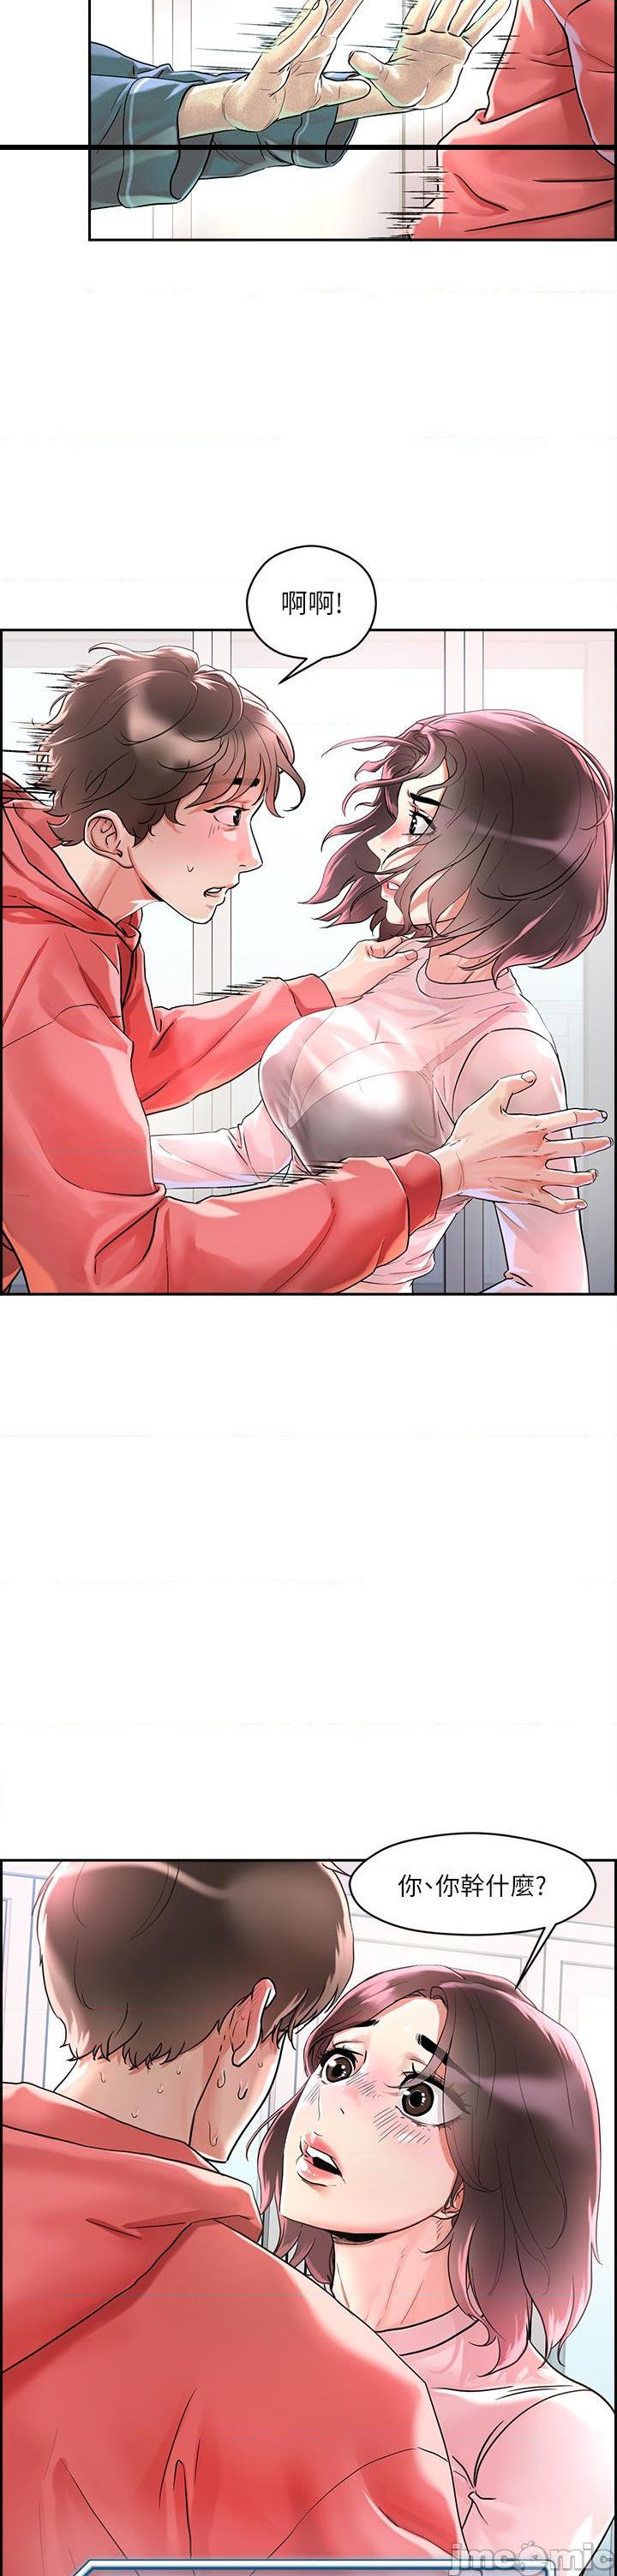 《把妹鬼达人》漫画 第1话 色鬼授予的爱爱超能力